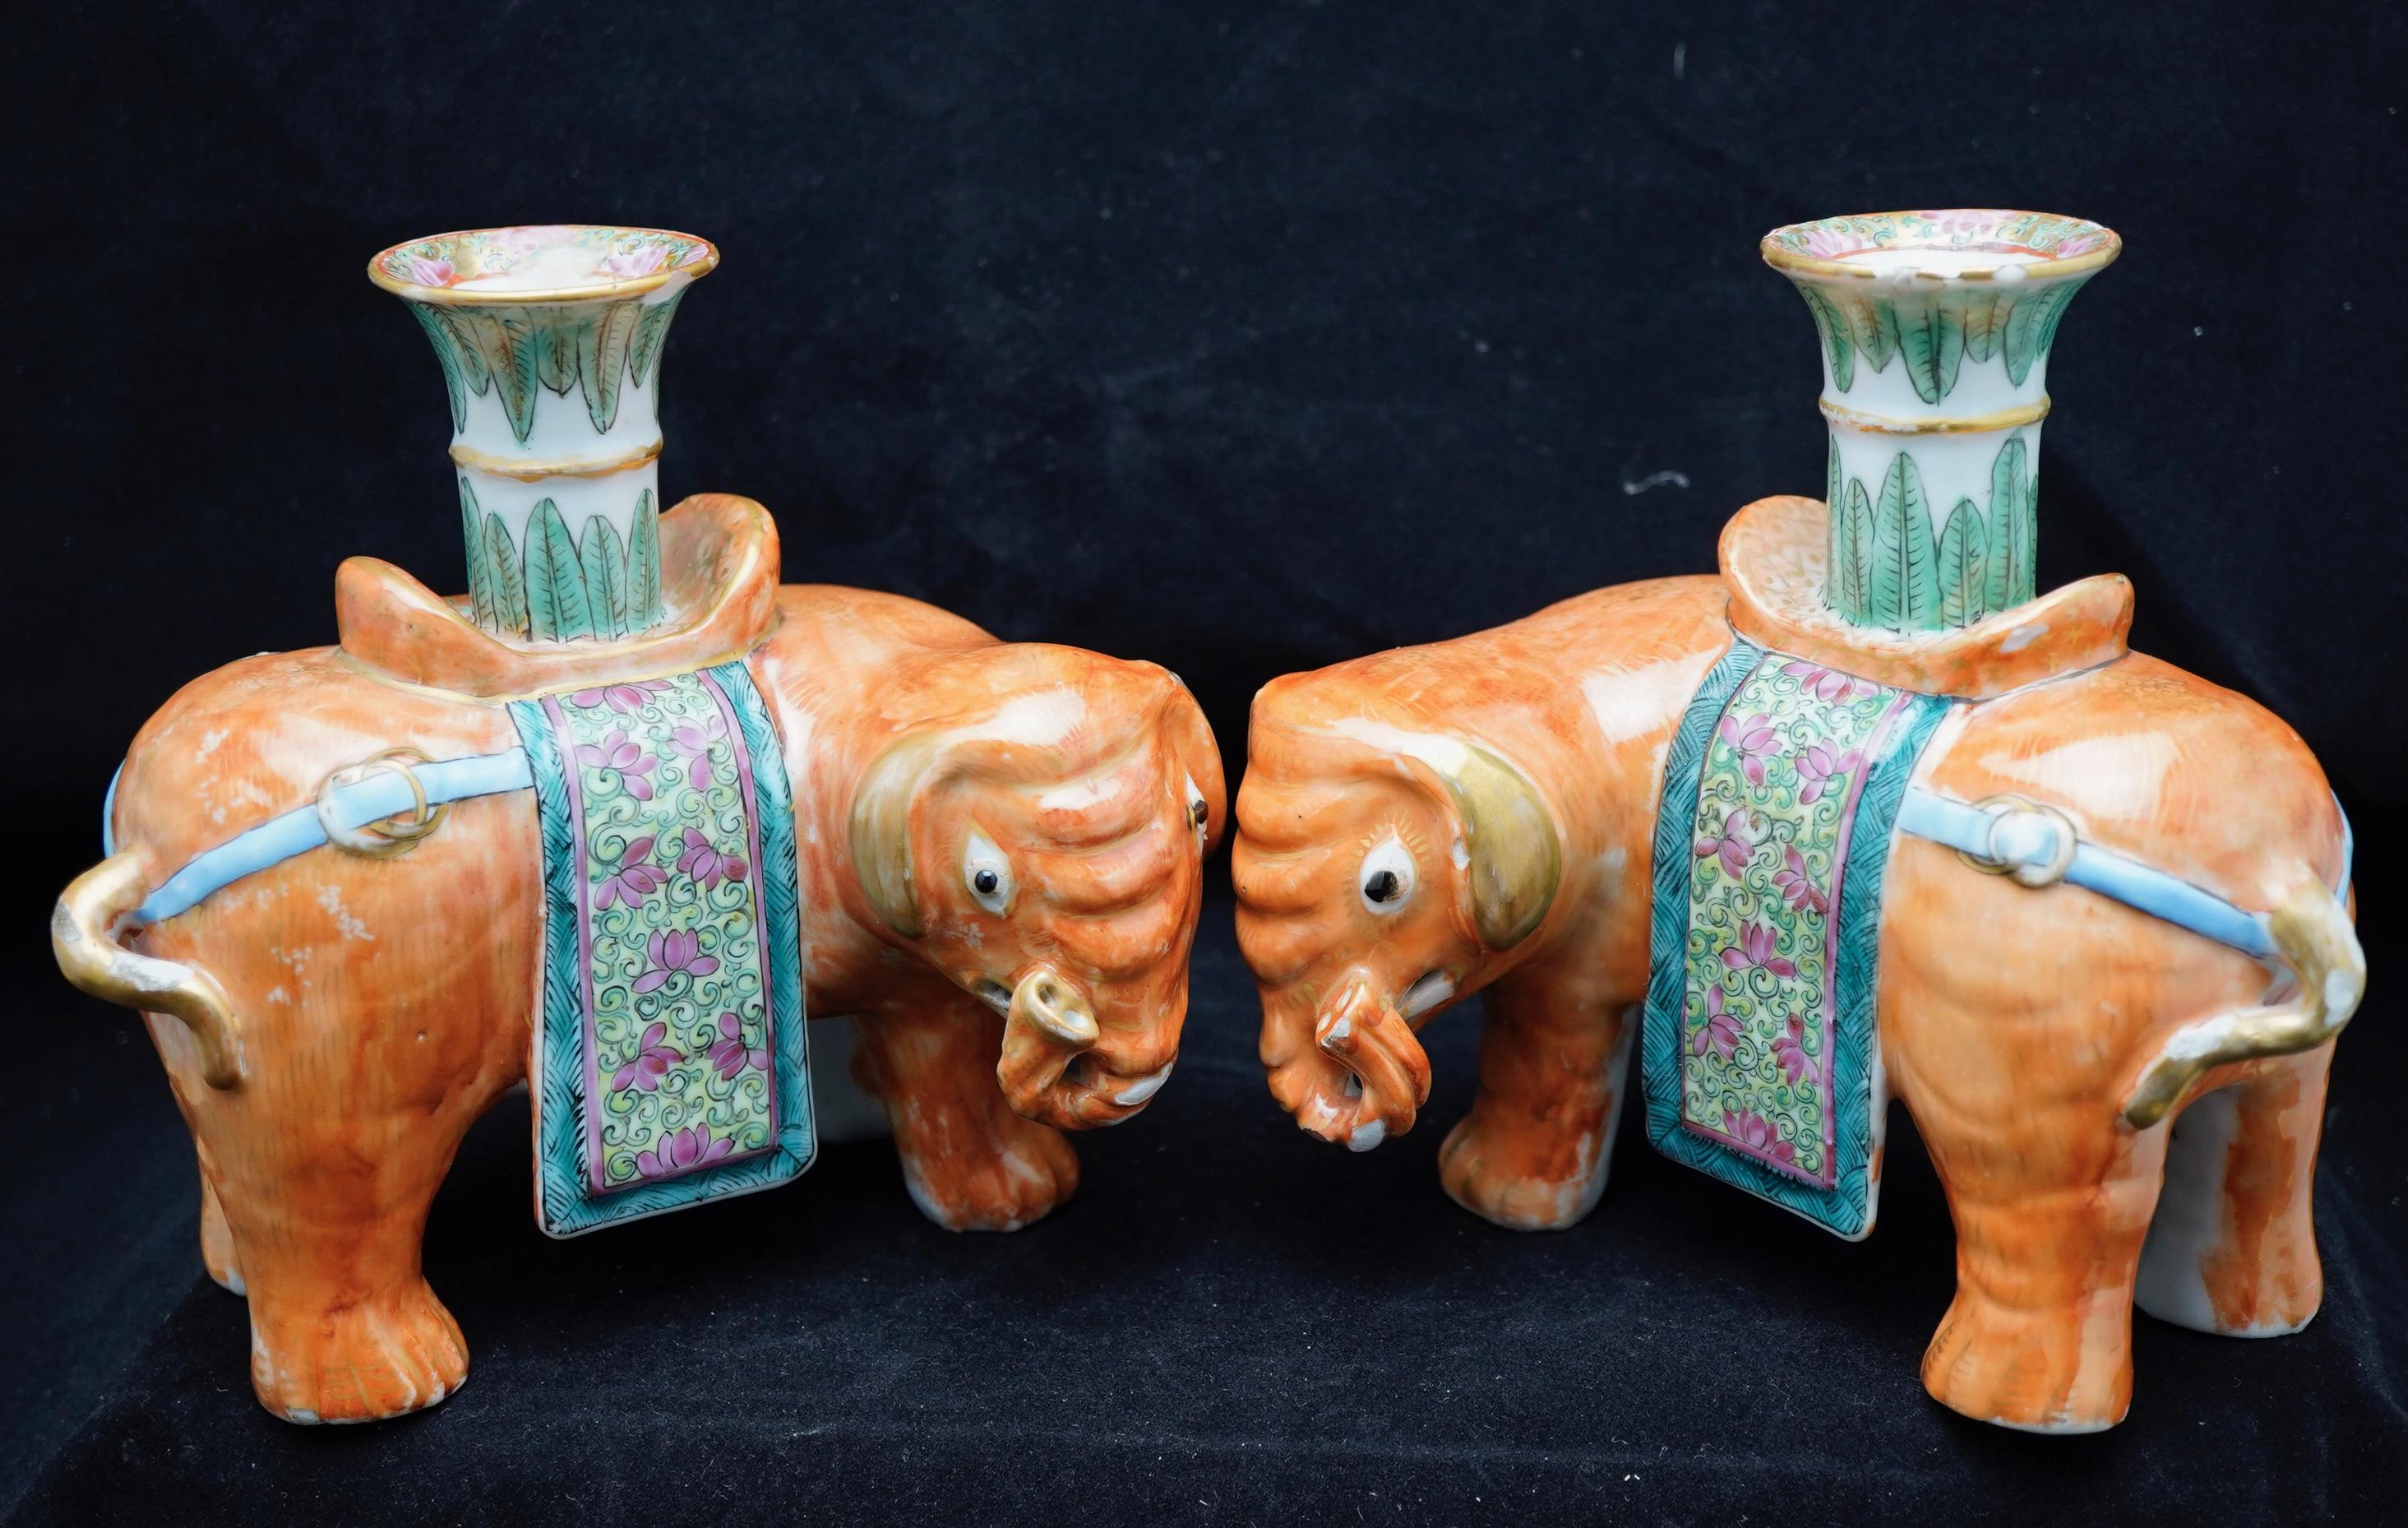 
Paire de chandeliers ou bâtons de josh en forme d'éléphants caparaçonnés de la famille rose chinoise. La paire est finement décorée et dorée.